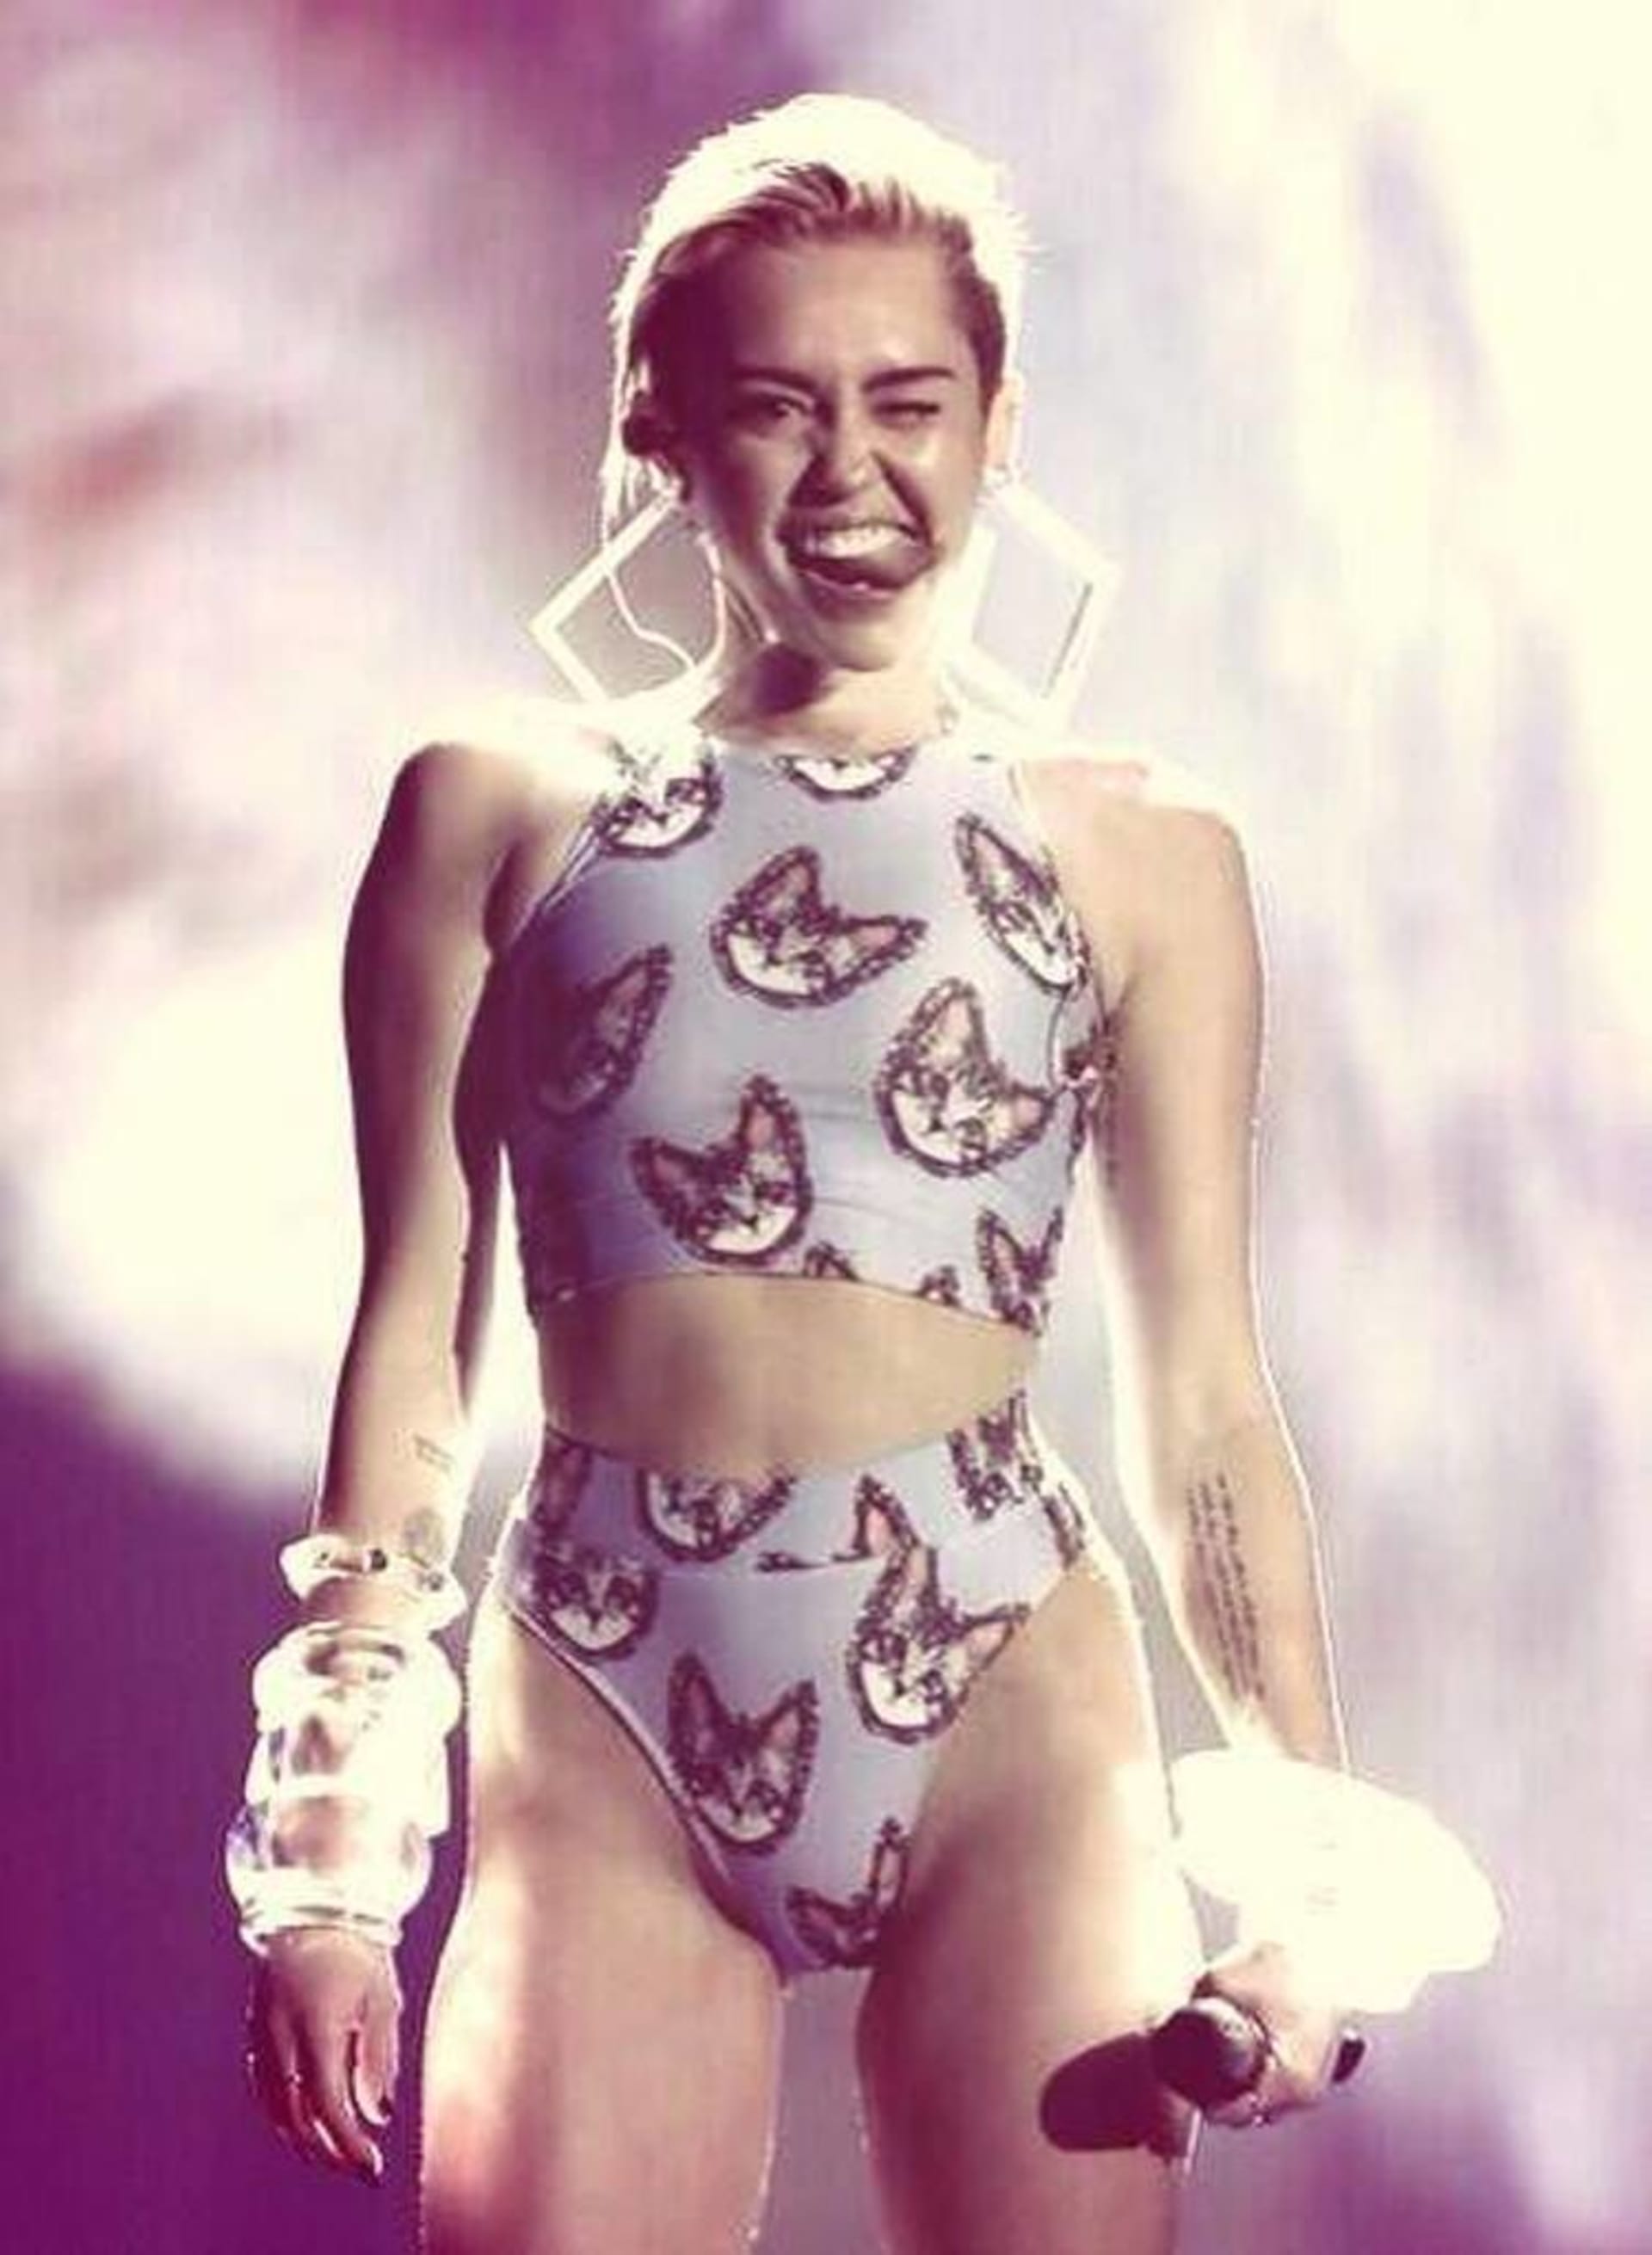 Na svá vystoupení si Miley Cyrus vybírá už jen extravagantní oblečení